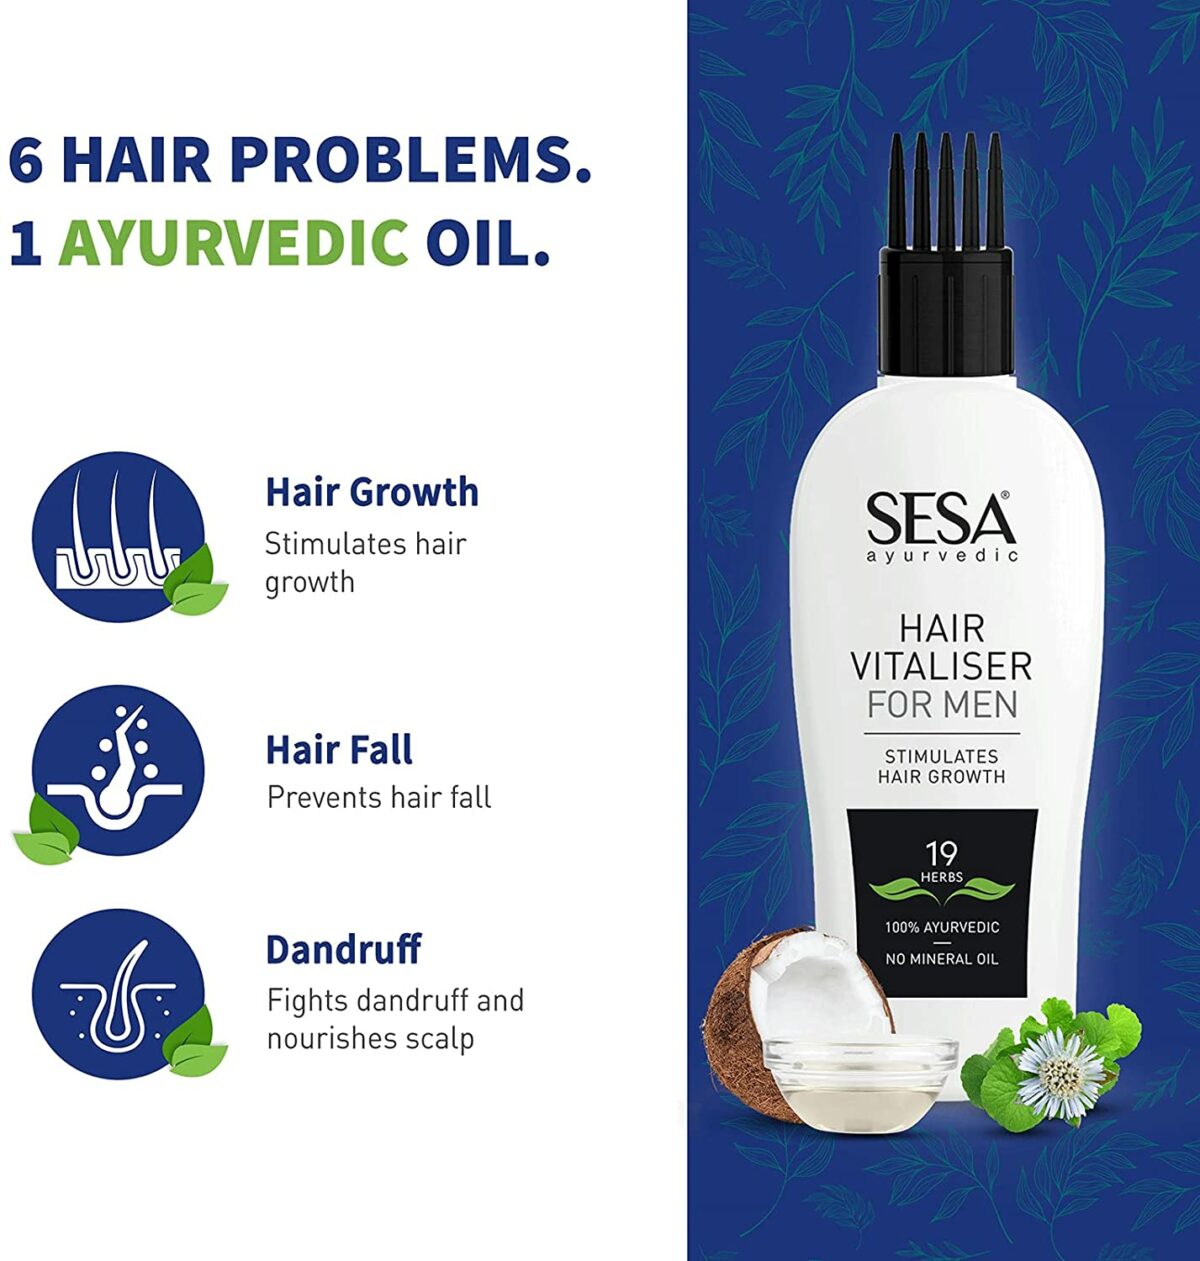 Sesa Ayurvedic Hair Vitaliser for Men - Dhempe Family Travel Blog